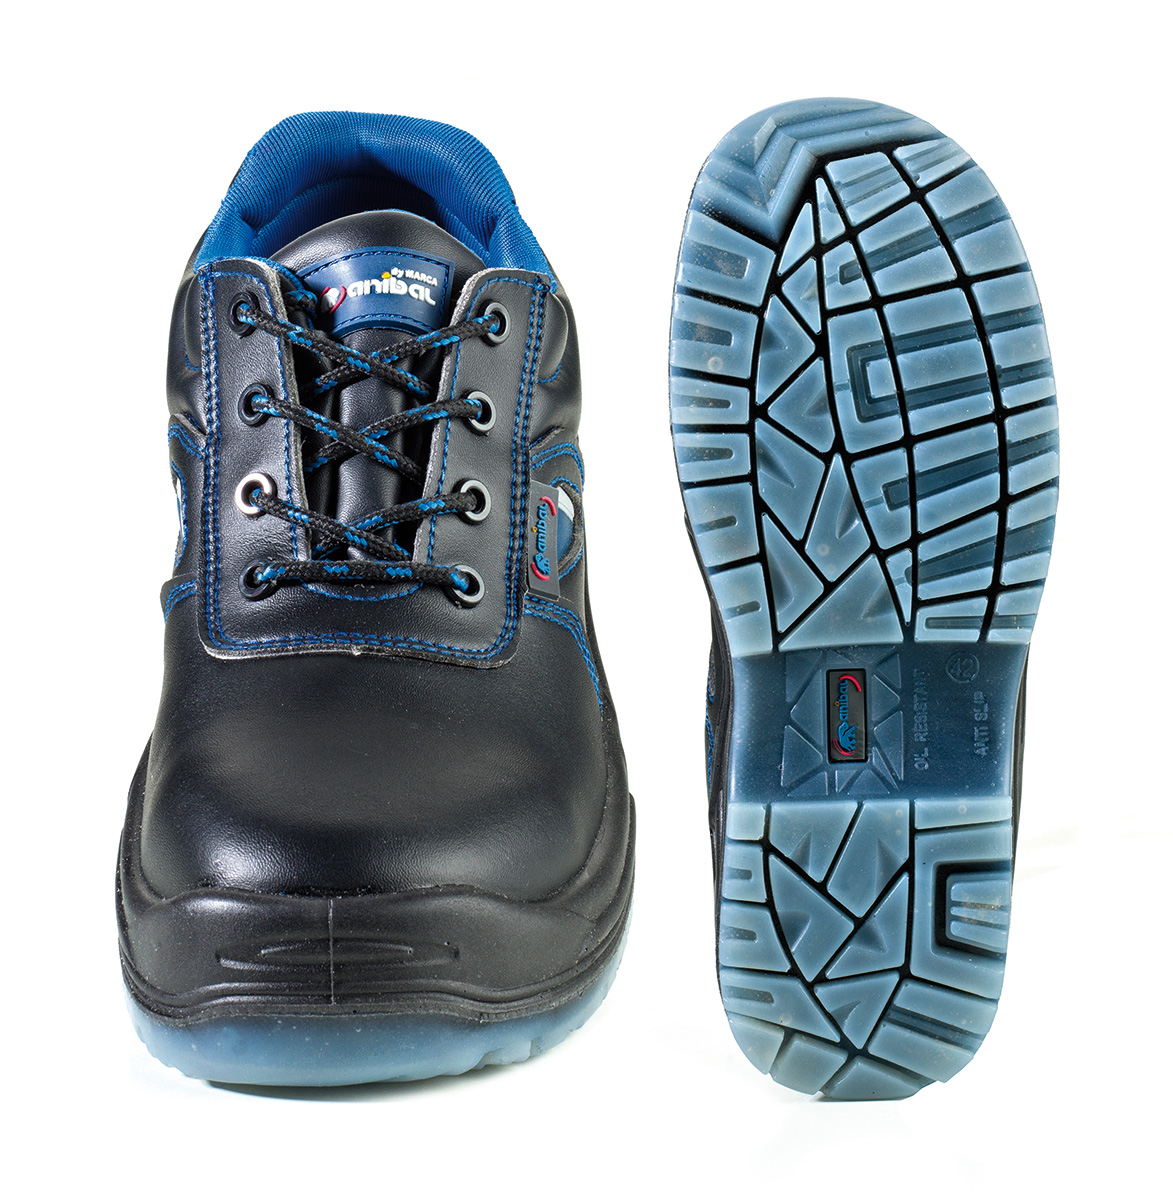 1688-ZAC Calzado de Seguridad Confort Zapato mod. “COMODO”.
Zapato piel microfibra en S3 con suela Poliuretano doble densidad extra-ancha.